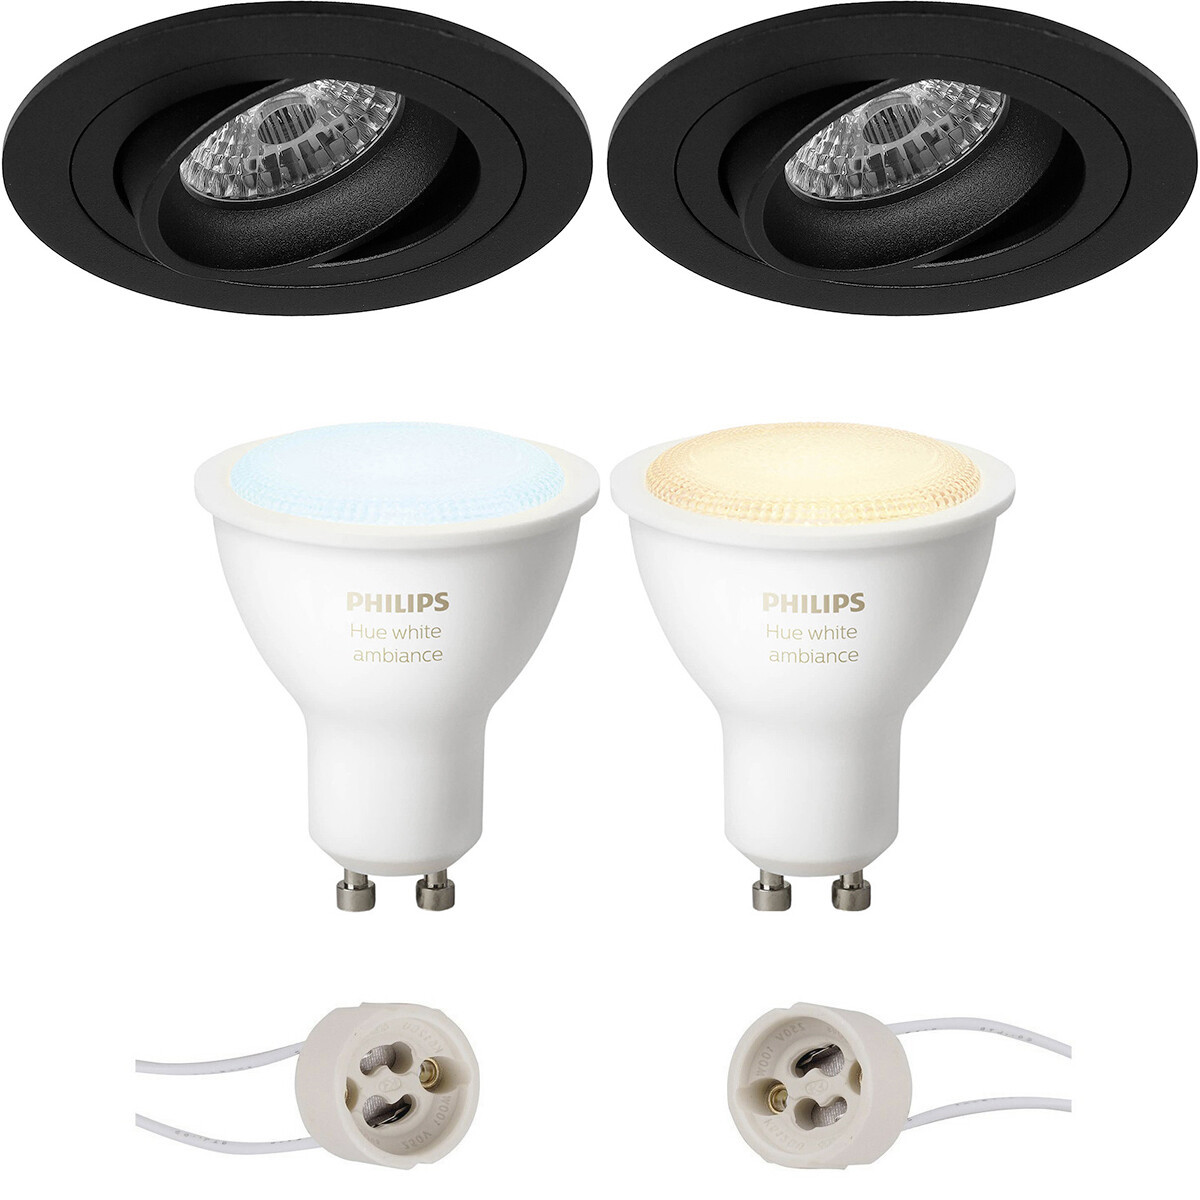 Pragmi Alpin Pro - Inbouw Rond - Mat Zwart - Kantelbaar Ø92mm - Philips Hue - LED Spot Set GU10 - White Ambiance - Bluetooth